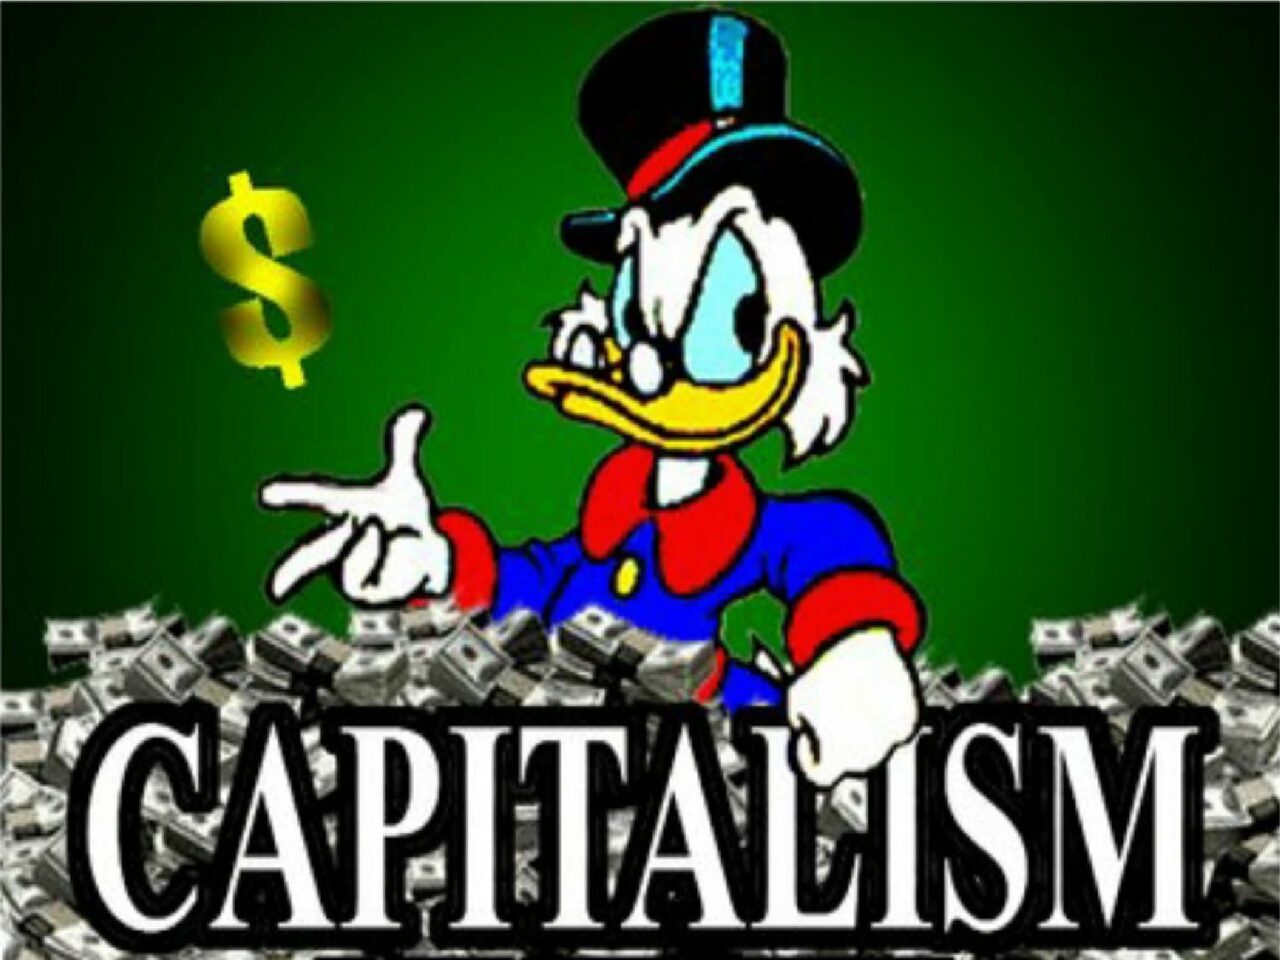 kapitalisme dagobert duck